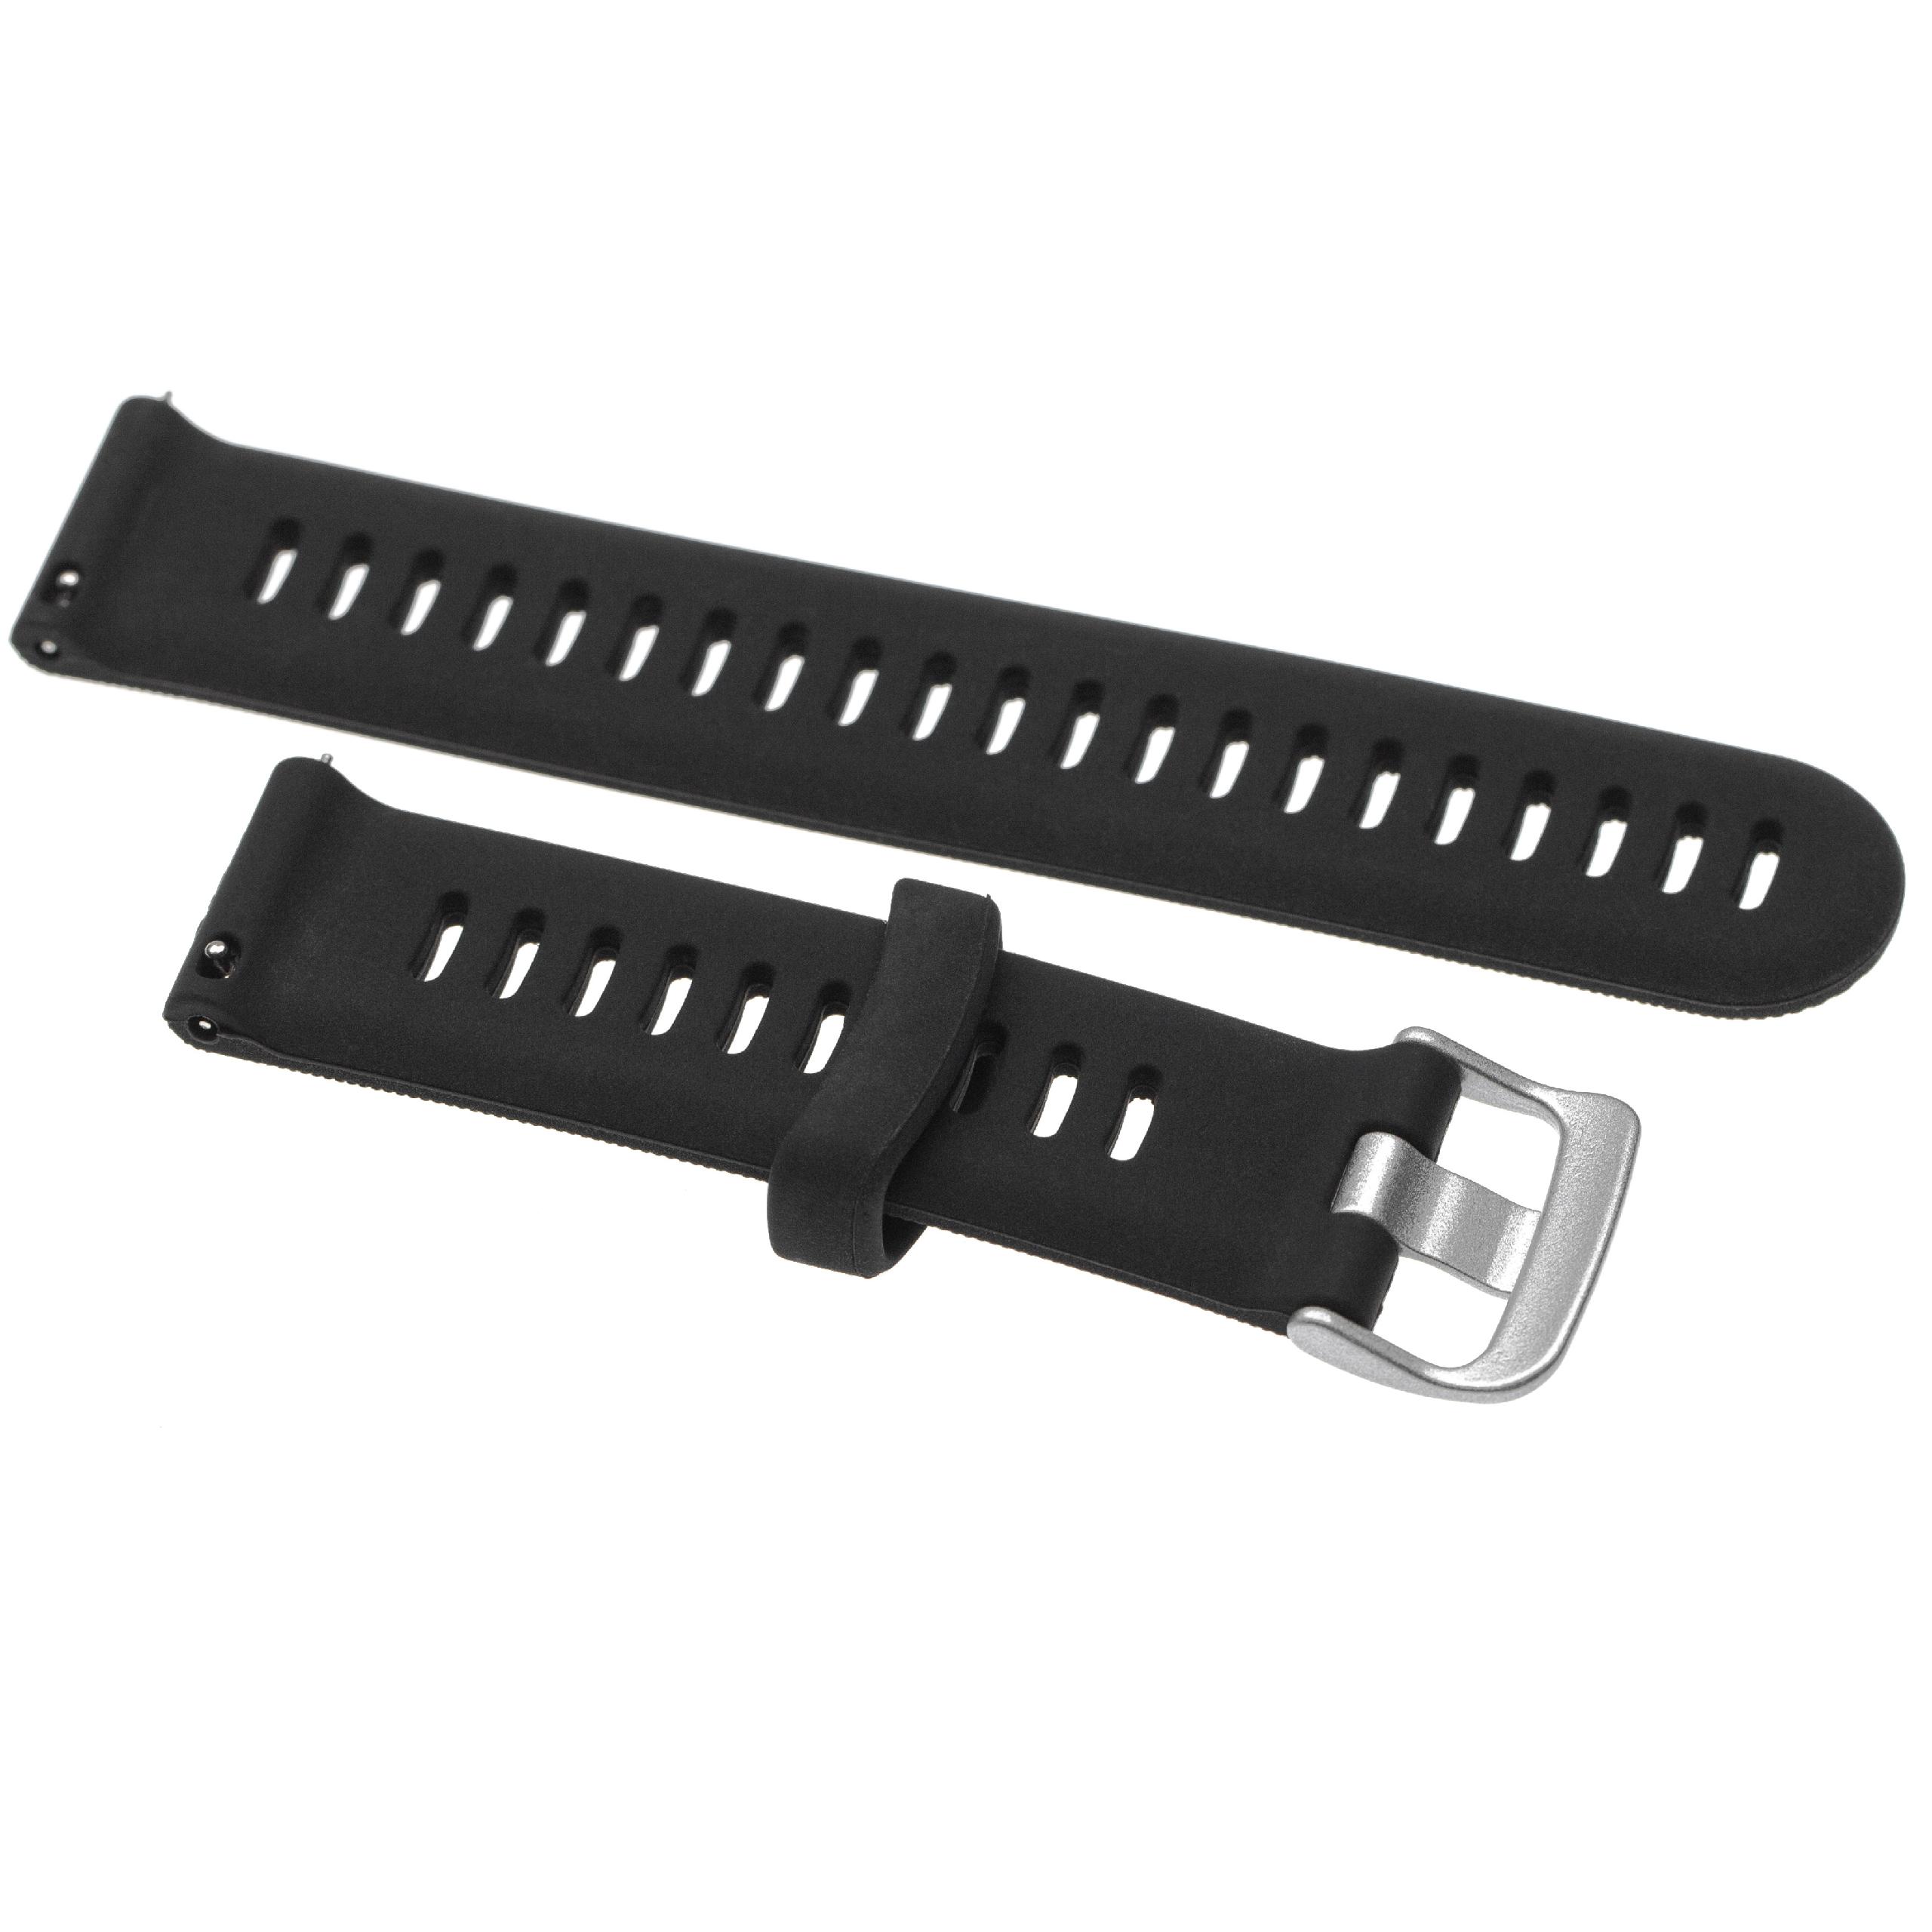 correa para Garmin Forerunner smartwatch - largo 12 + 8,7 cm, ancho 20 mm, silicona, negro